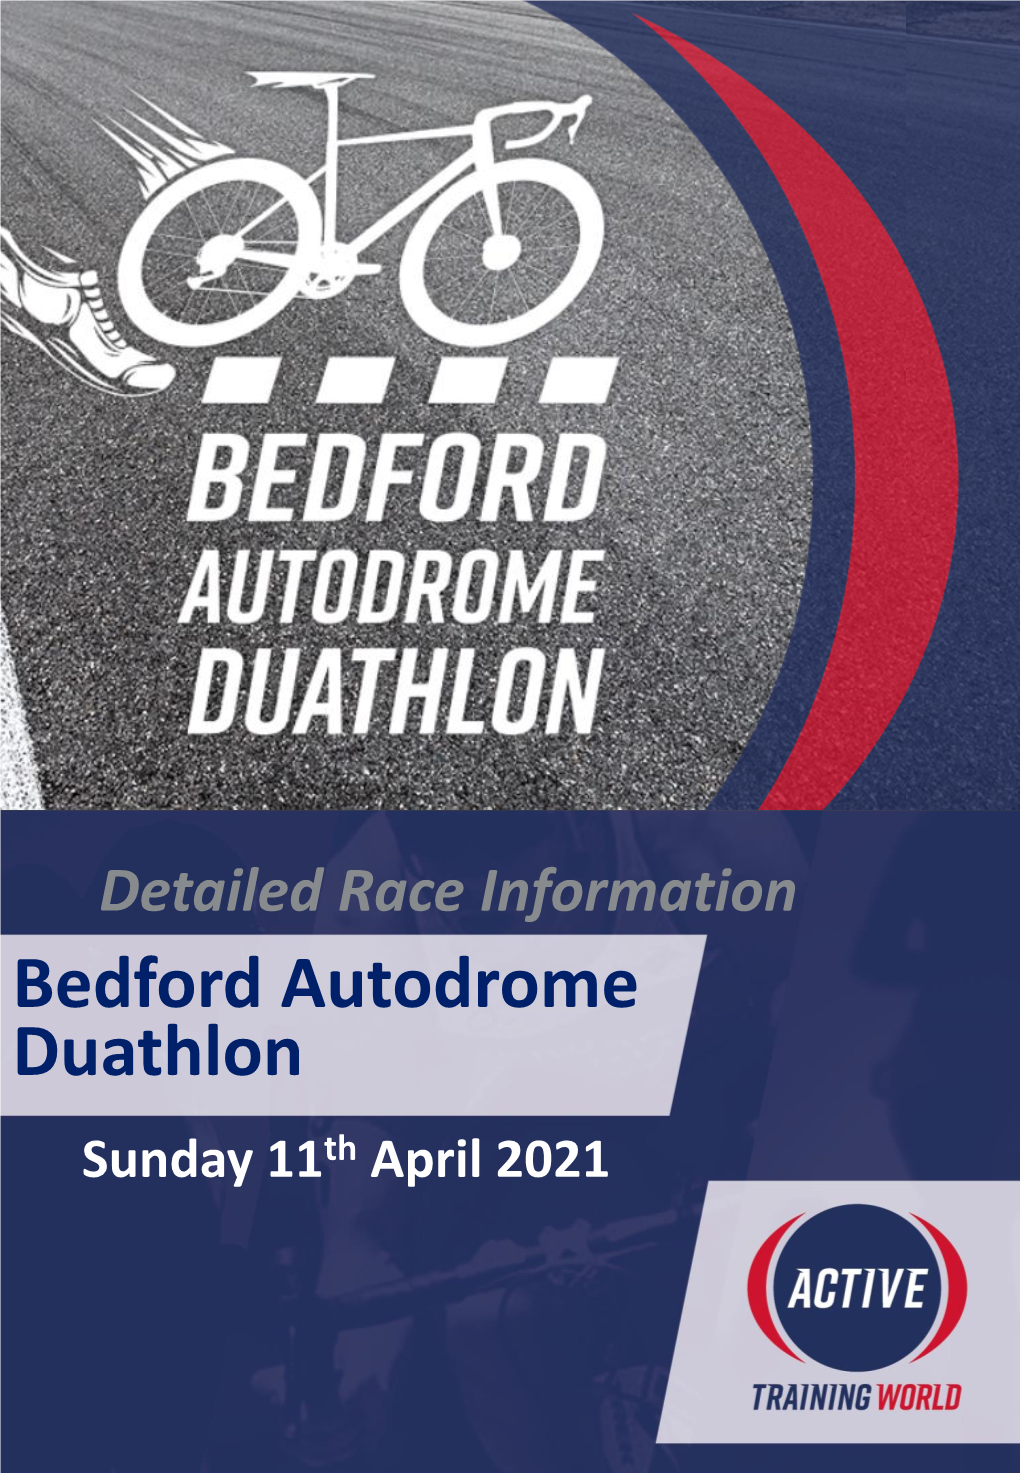 Bedford Autodrome Duathlon